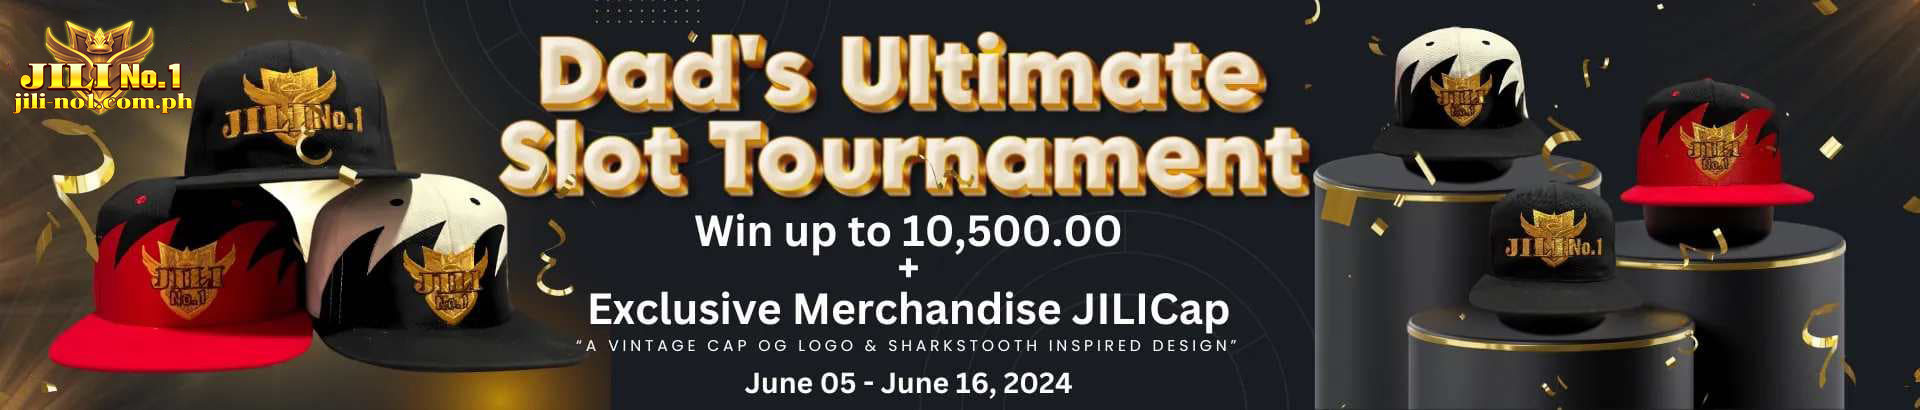 jilino1 slot tournament